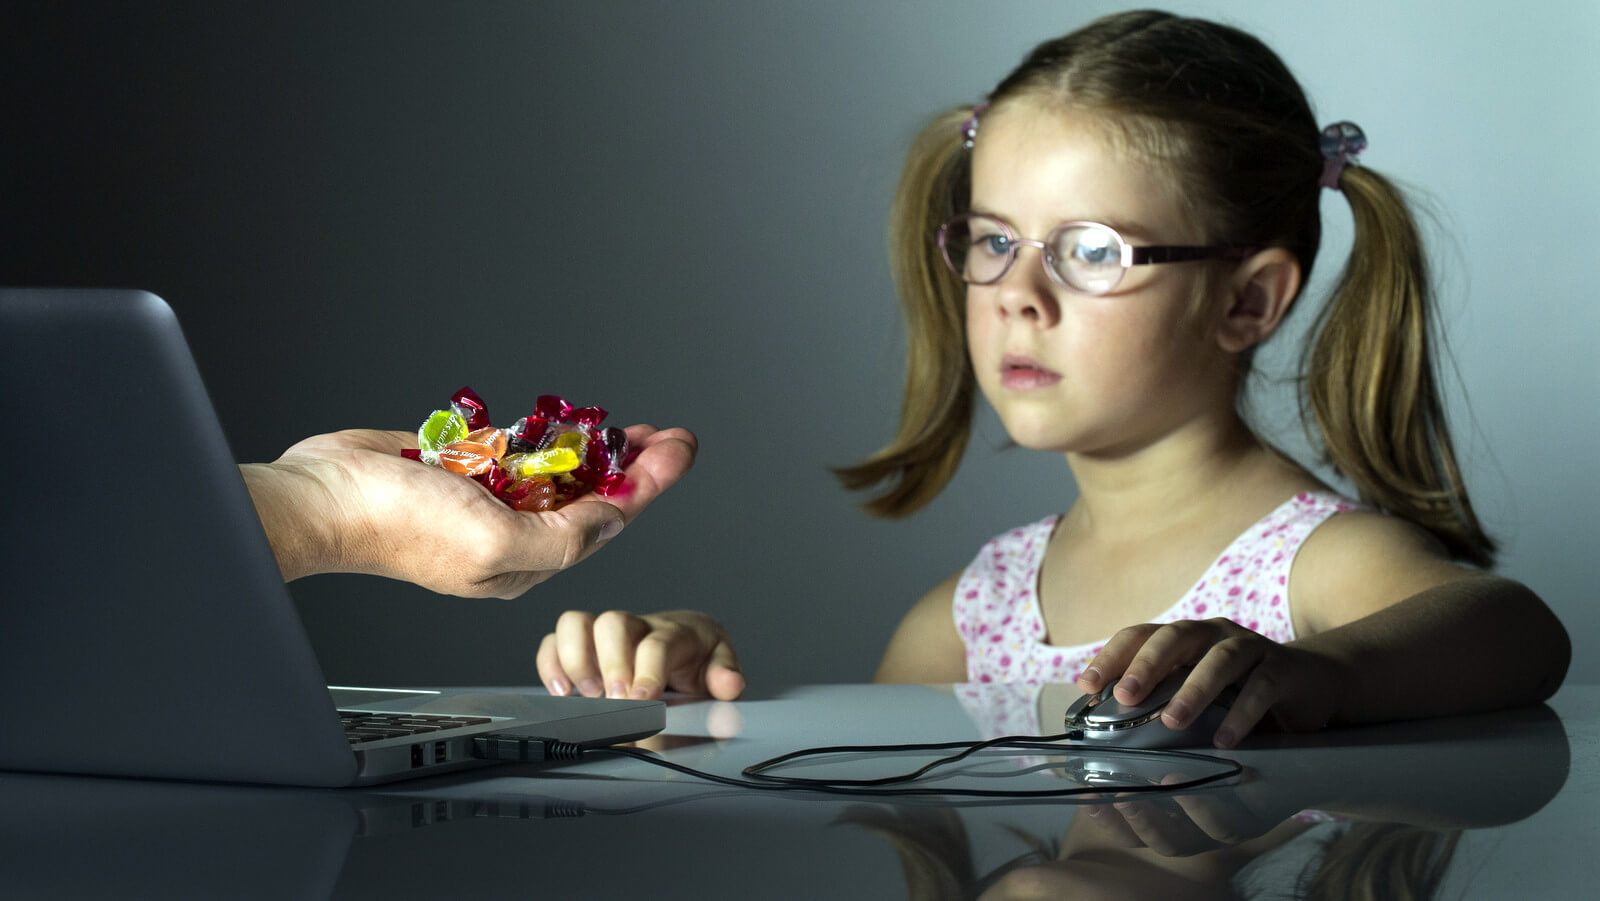 menina frente ao computador e uma mão oferecendo doces atrativos a ela oferece perigo - O Excesso de Telas na Infância é Um Perigo Silencioso